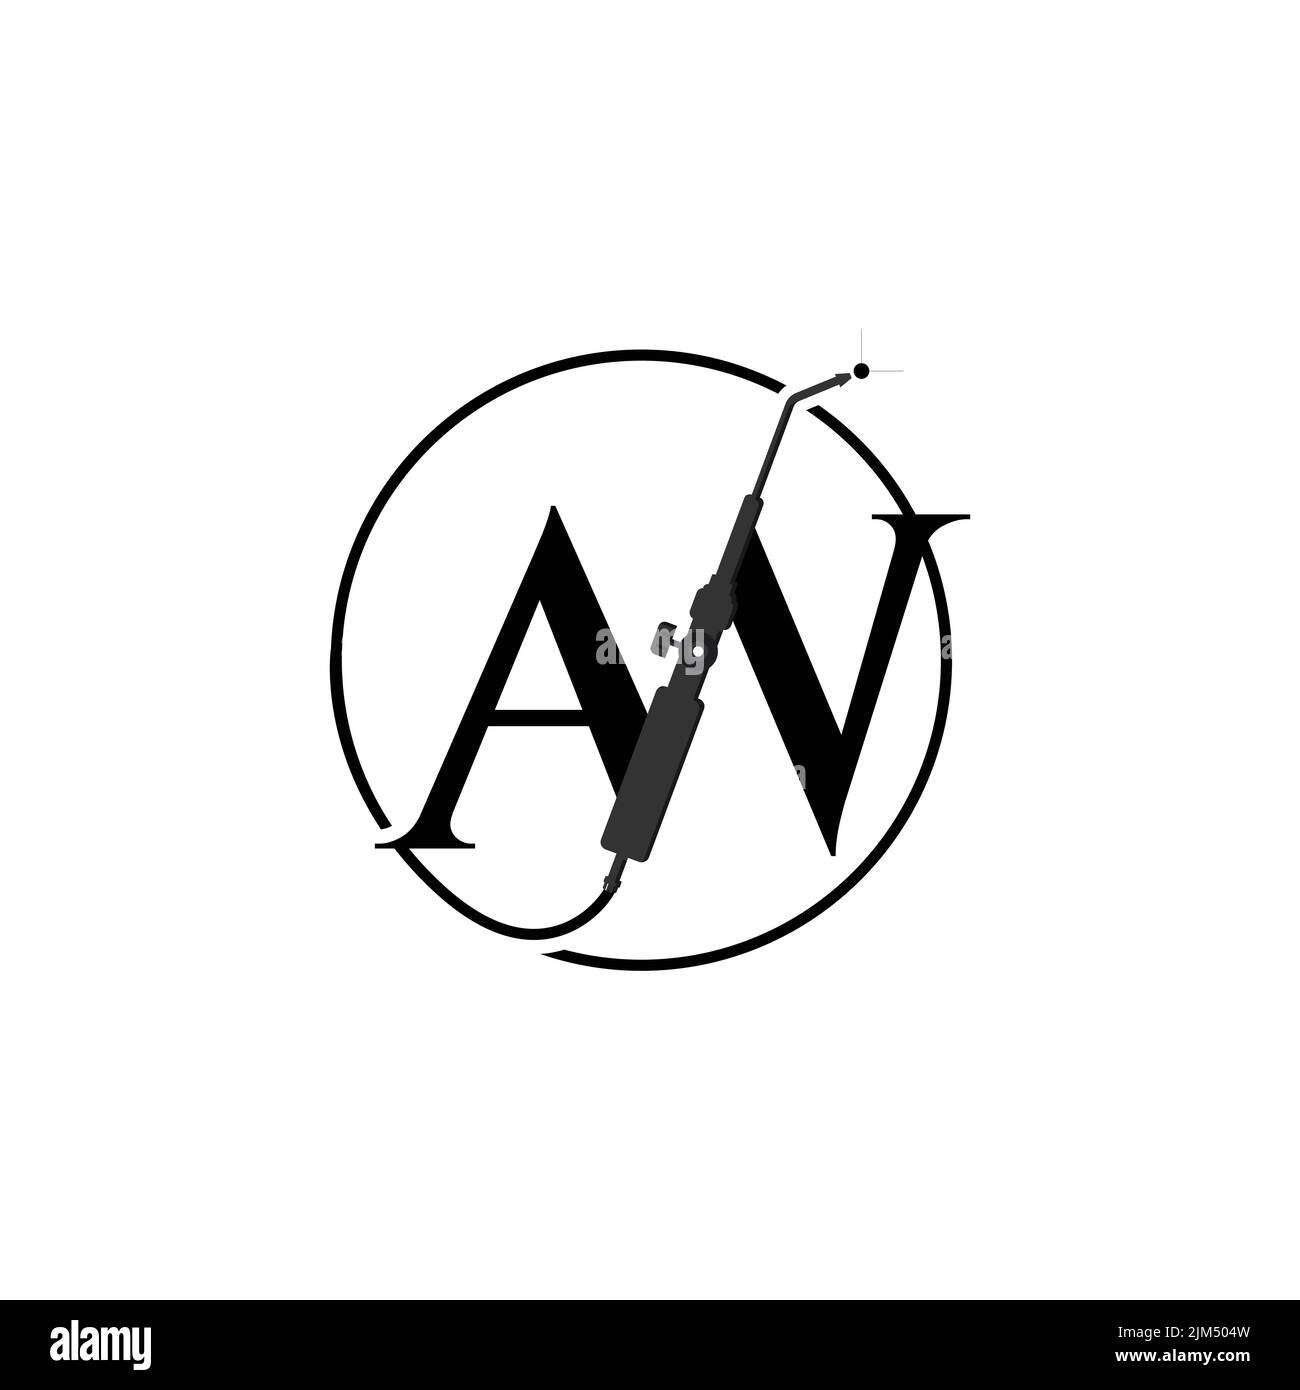 Disegno iniziale del logo di saldatura della lettera AW. Logo tipografico con lettere A e W, strumento di saldatura all'interno della forma circolare Illustrazione Vettoriale